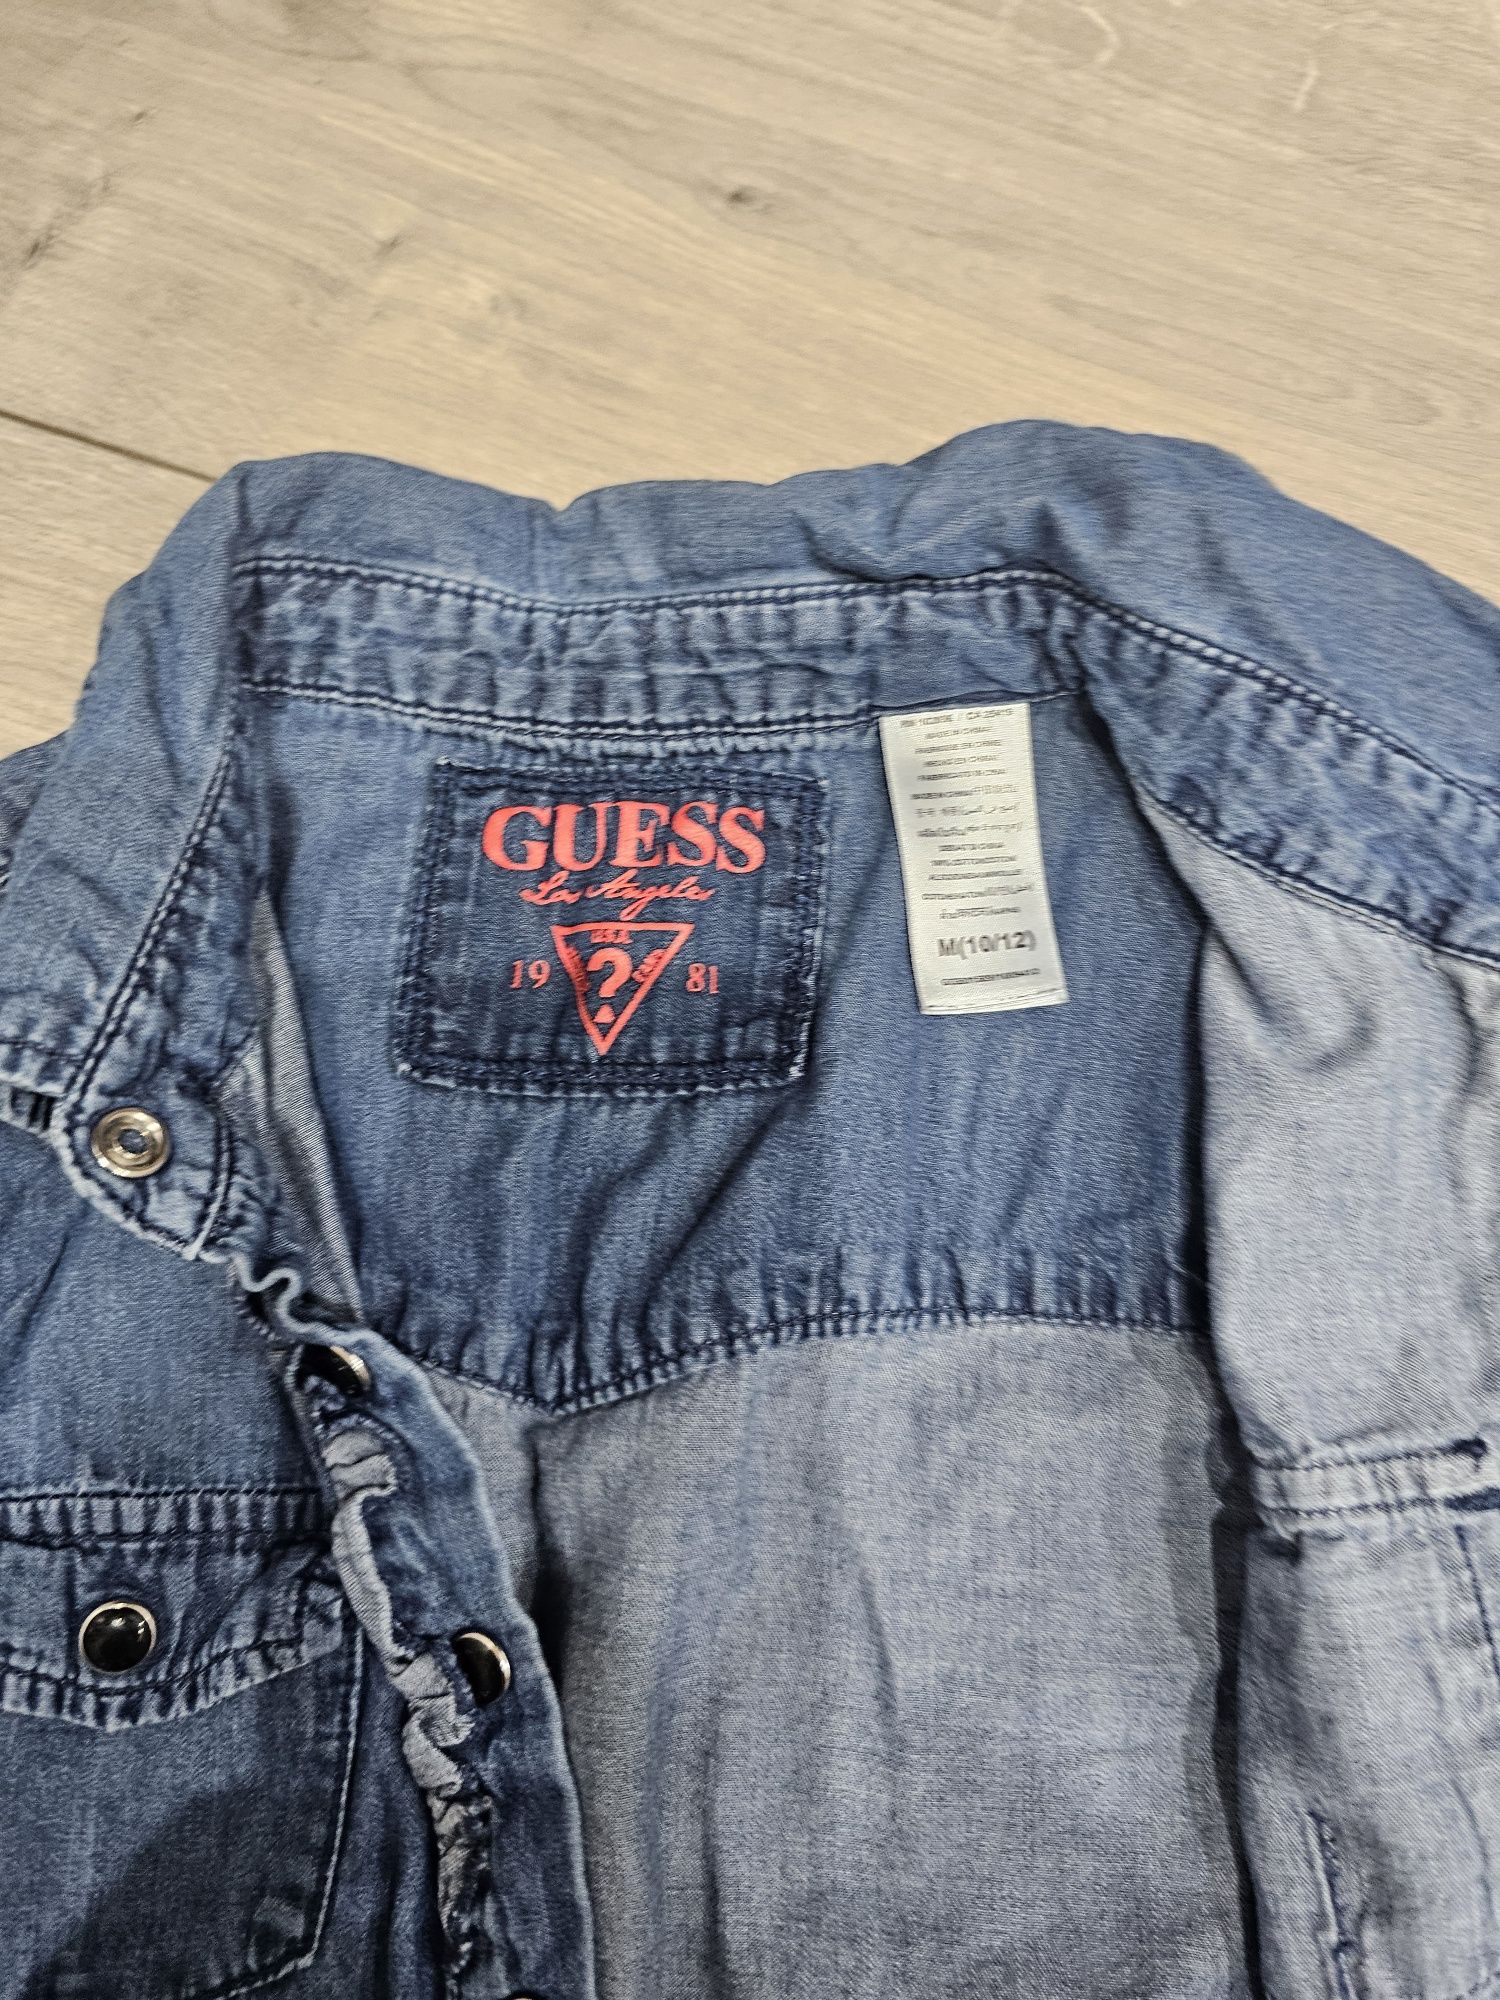 Koszula dżinsowa dla dziewczynki firmy Guess.